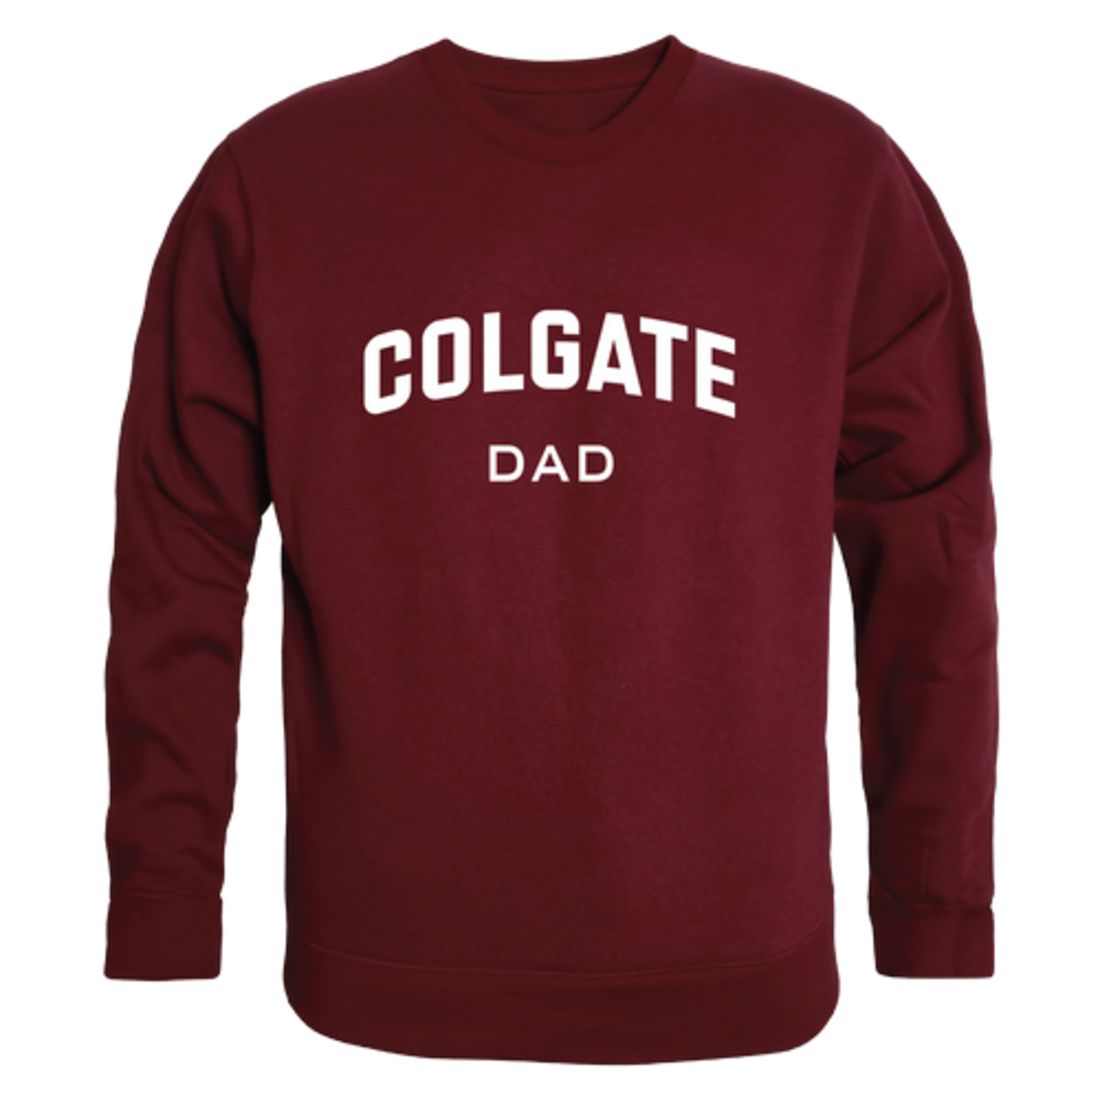 Colgate University Raider Dad Fleece Crewneck Pullover Sweatshirt Heather Grey-Campus-Wardrobe